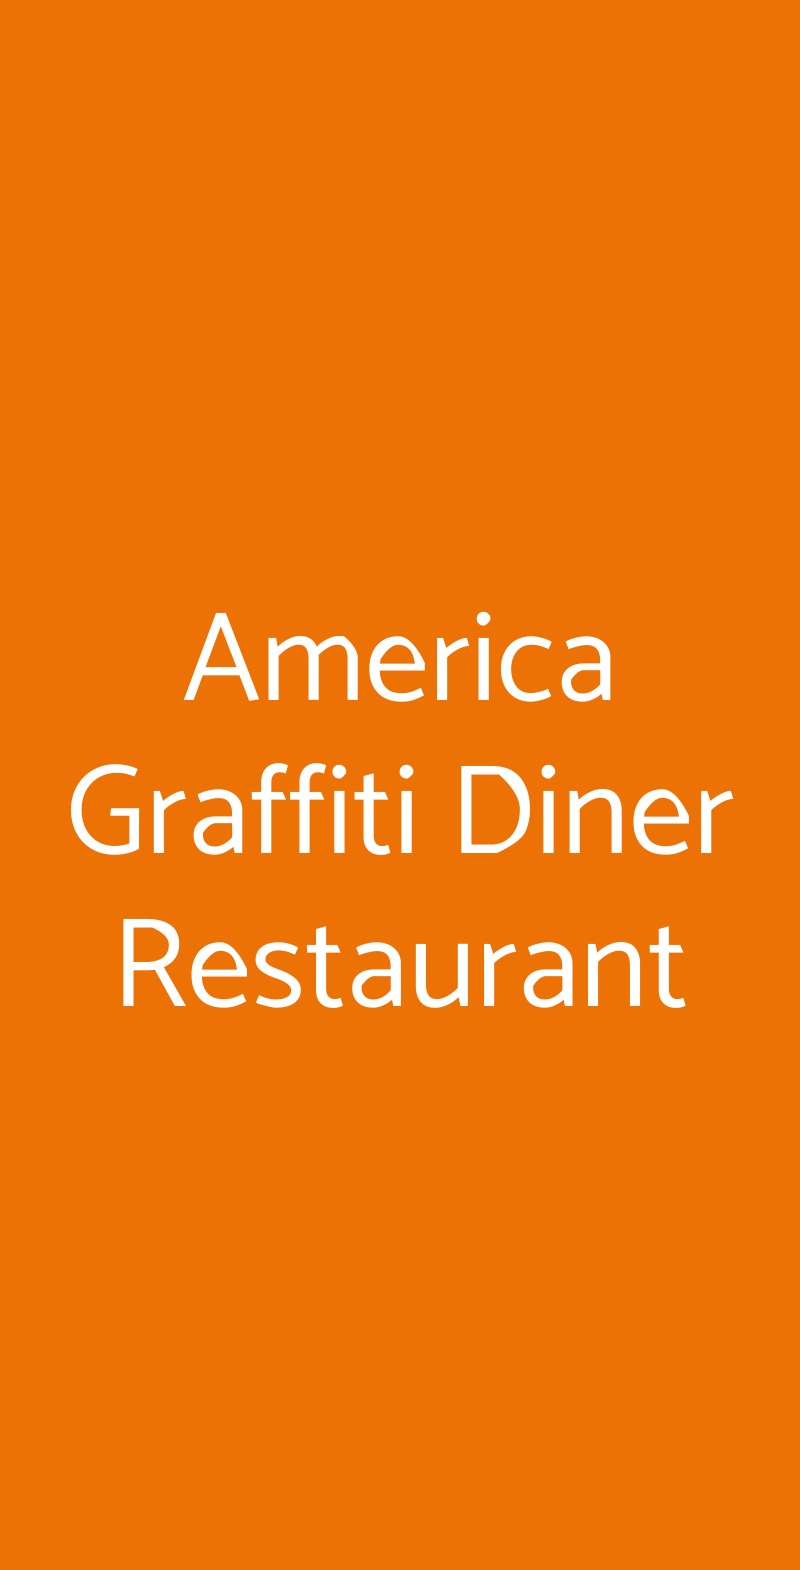 America Graffiti Diner Restaurant  Rivoli menù 1 pagina